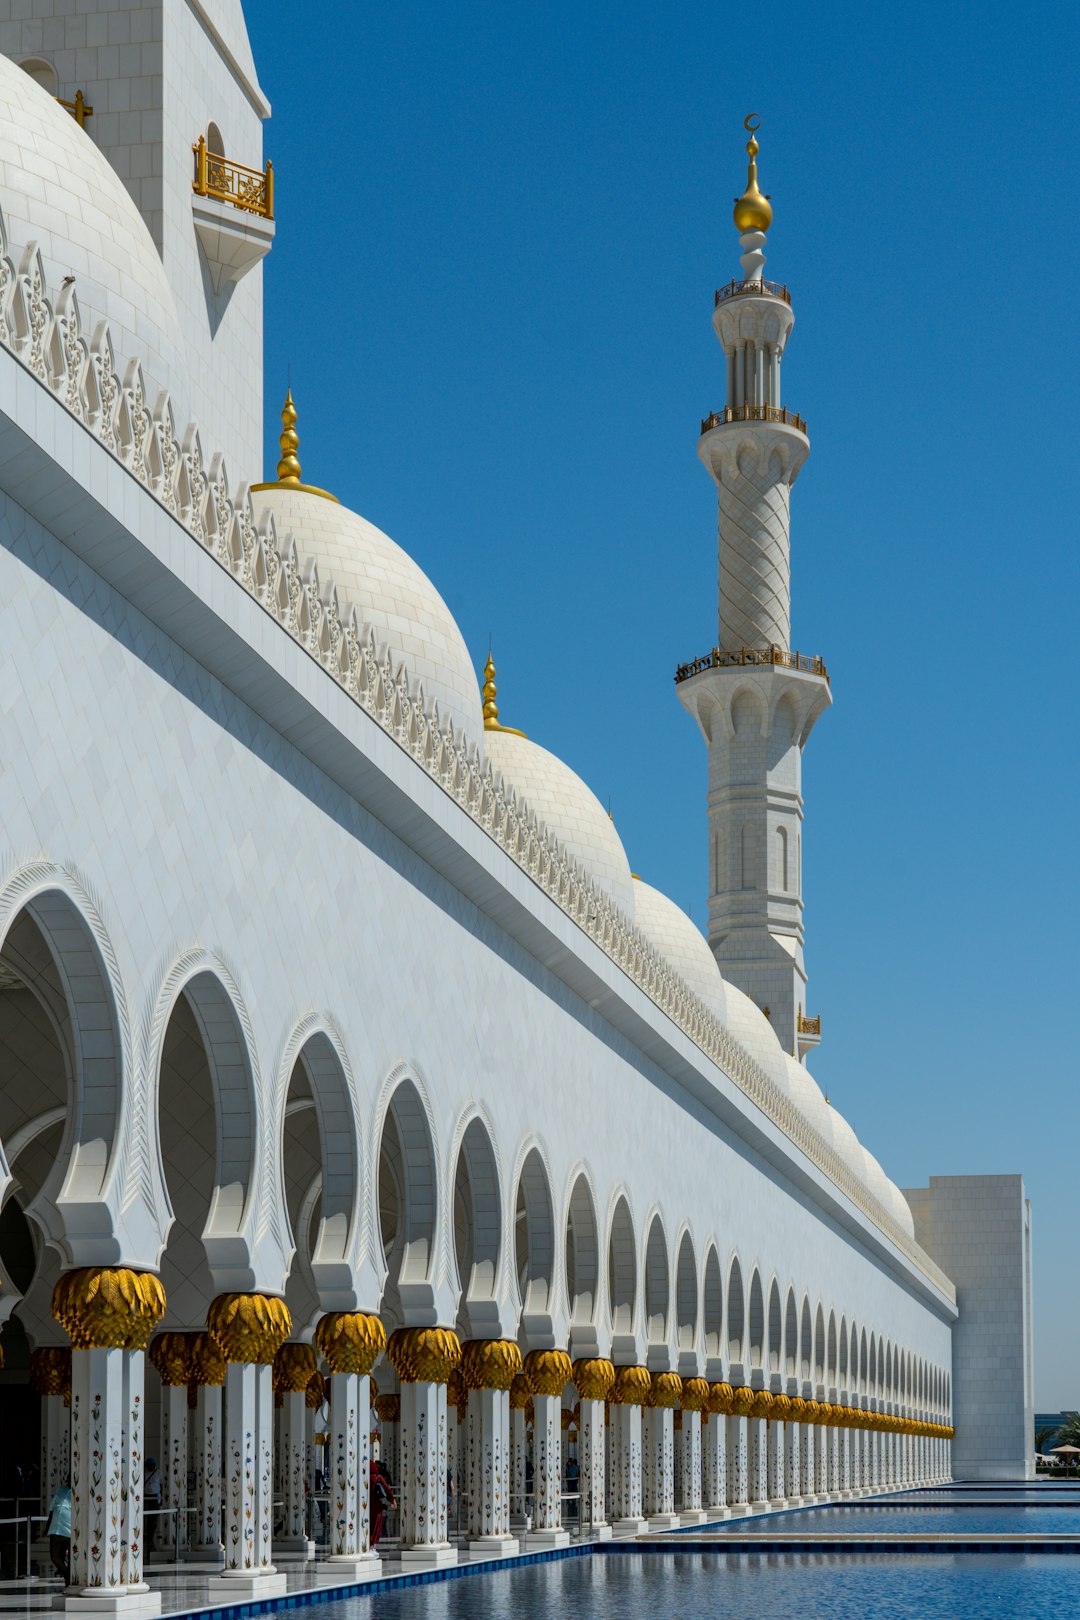 Mosque photo spot Sheikh Zayed Grand Mosque - Abu Dhabi - United Arab Emirates Abu Dhabi - United Arab Emirates